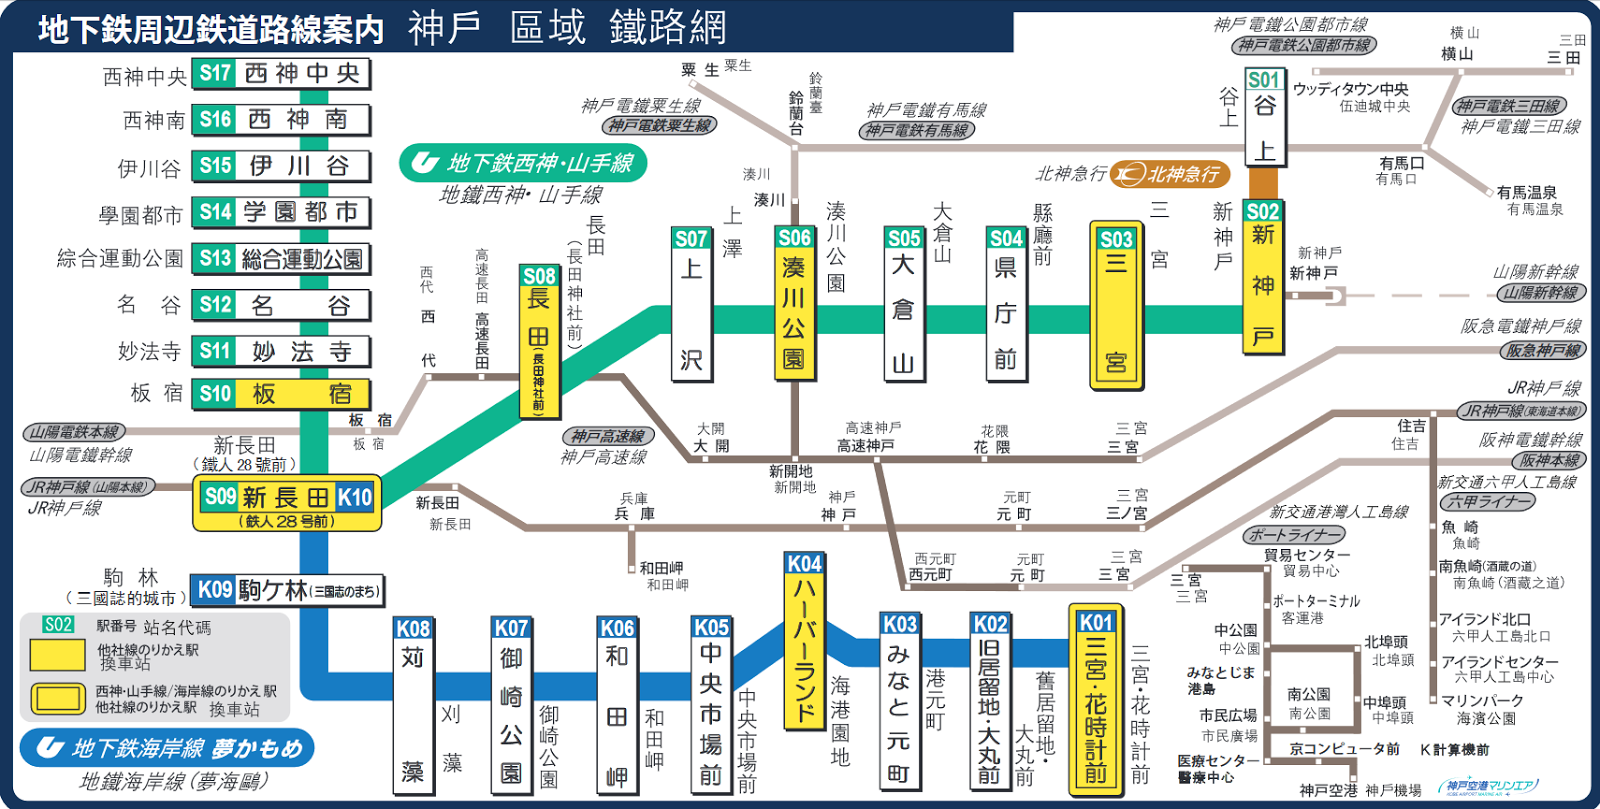 神戶-神戶交通-推薦-優惠券-觀光巴士-公車-地鐵-地圖-私鐵-JR-關西-日本-自由行-介紹-神戶交通攻略-Kobe-Public-Transport